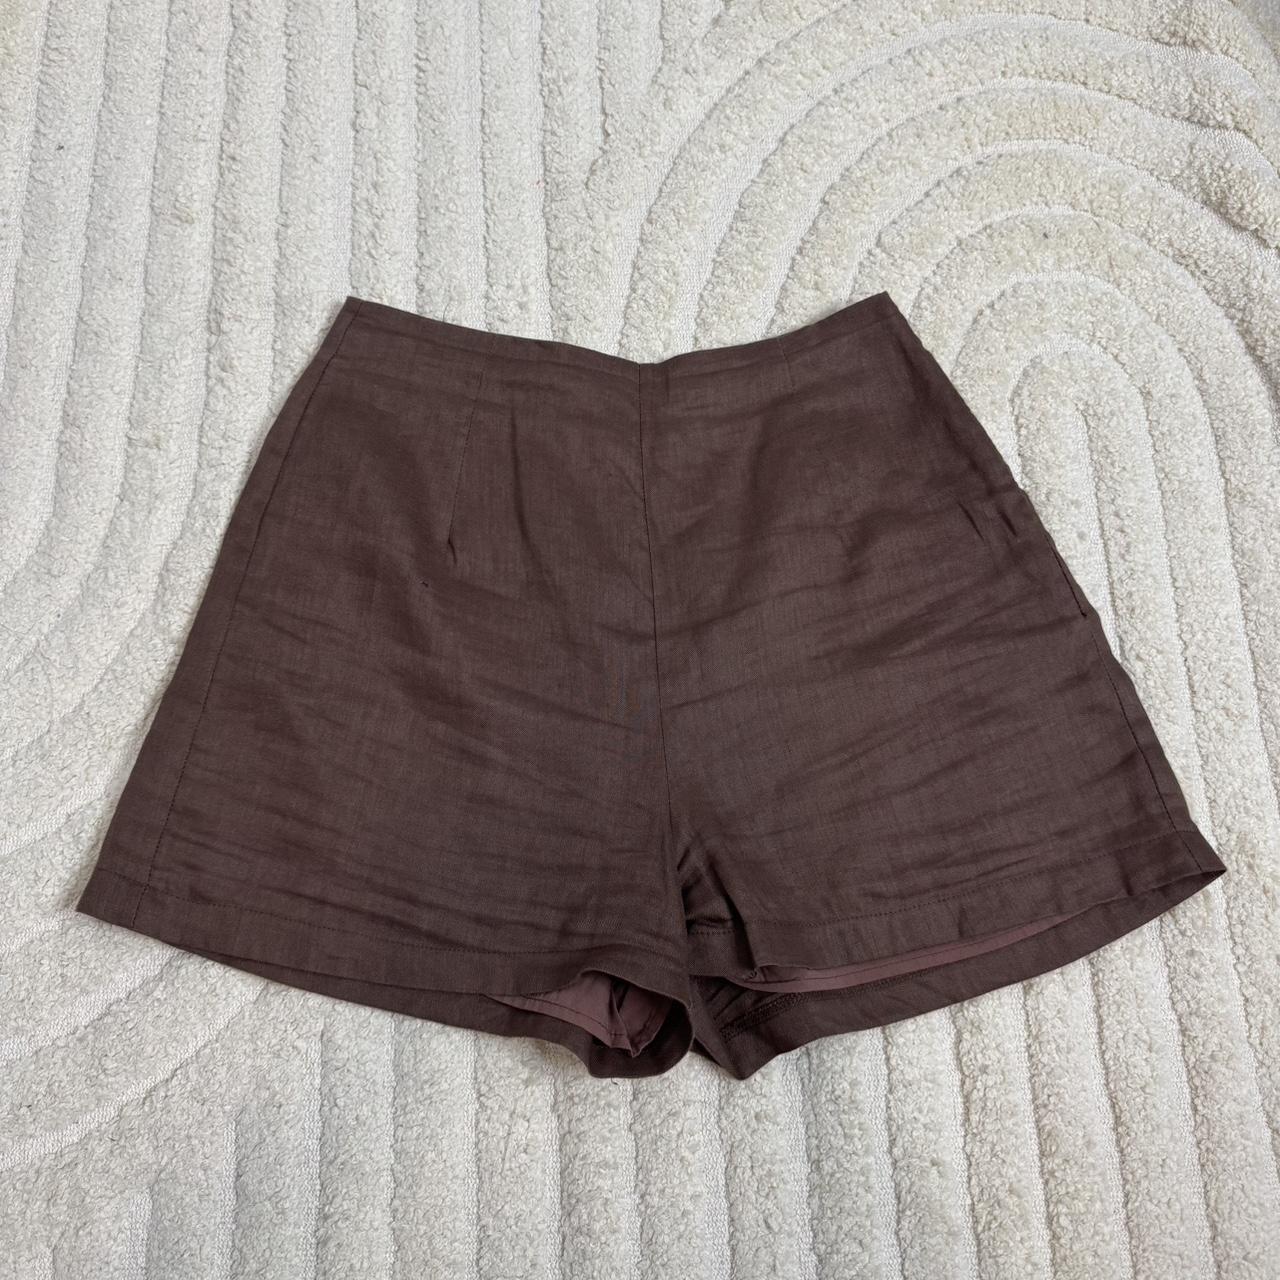 Dissh shorts Zip side Size 8 #linen #dissh #shorts - Depop